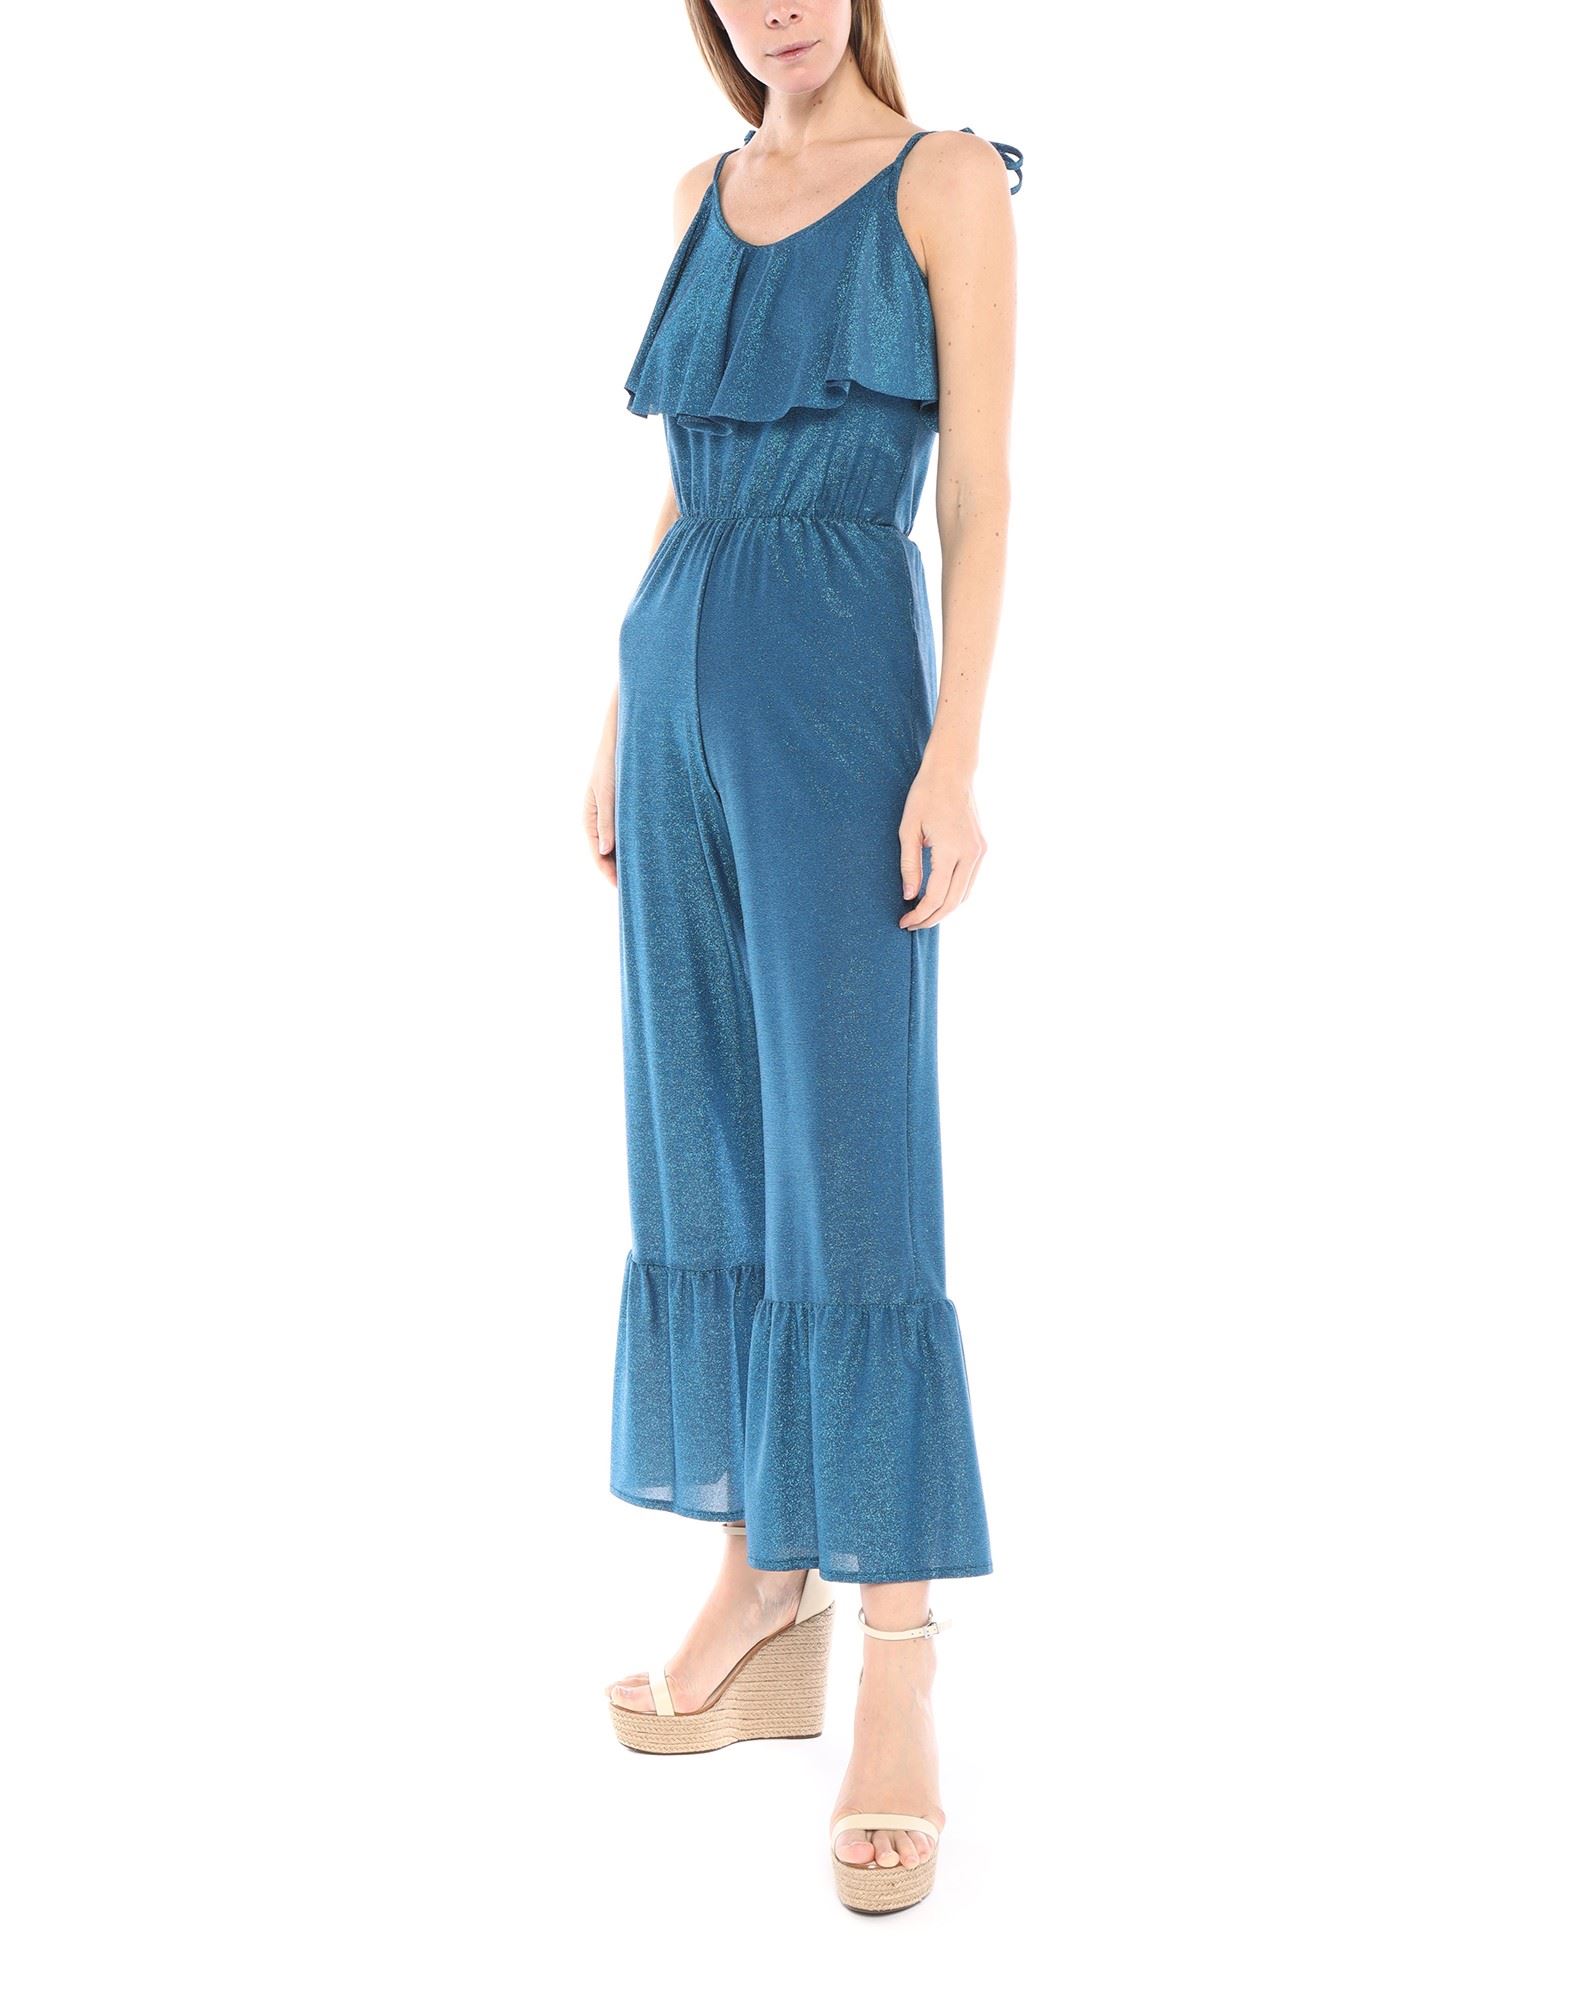 Cotazur Woman Jumpsuit Blue Size M Polyester, Polyamide, Rubber